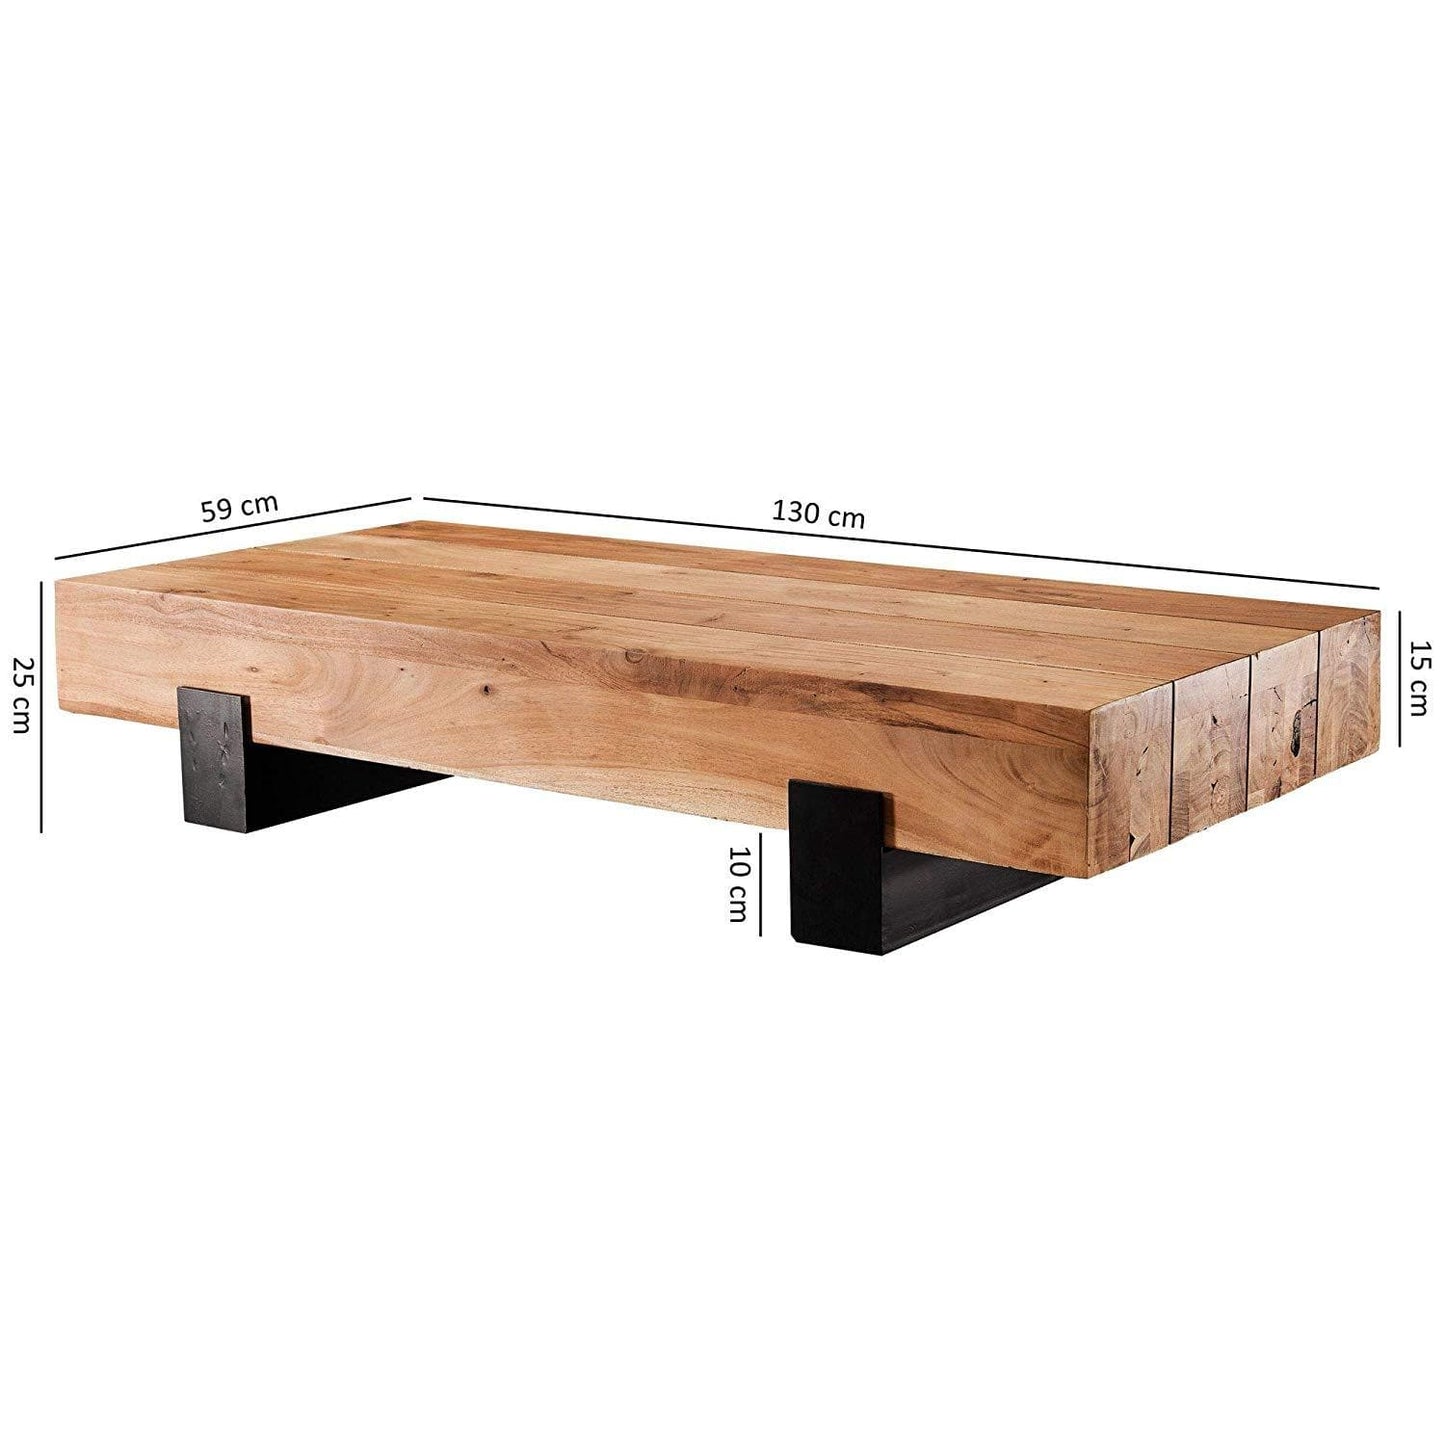 Nancy's Coffee Table Wood - Table de salon - Tables basses Marron - Structure en métal - 130 x 25 x 59 cm